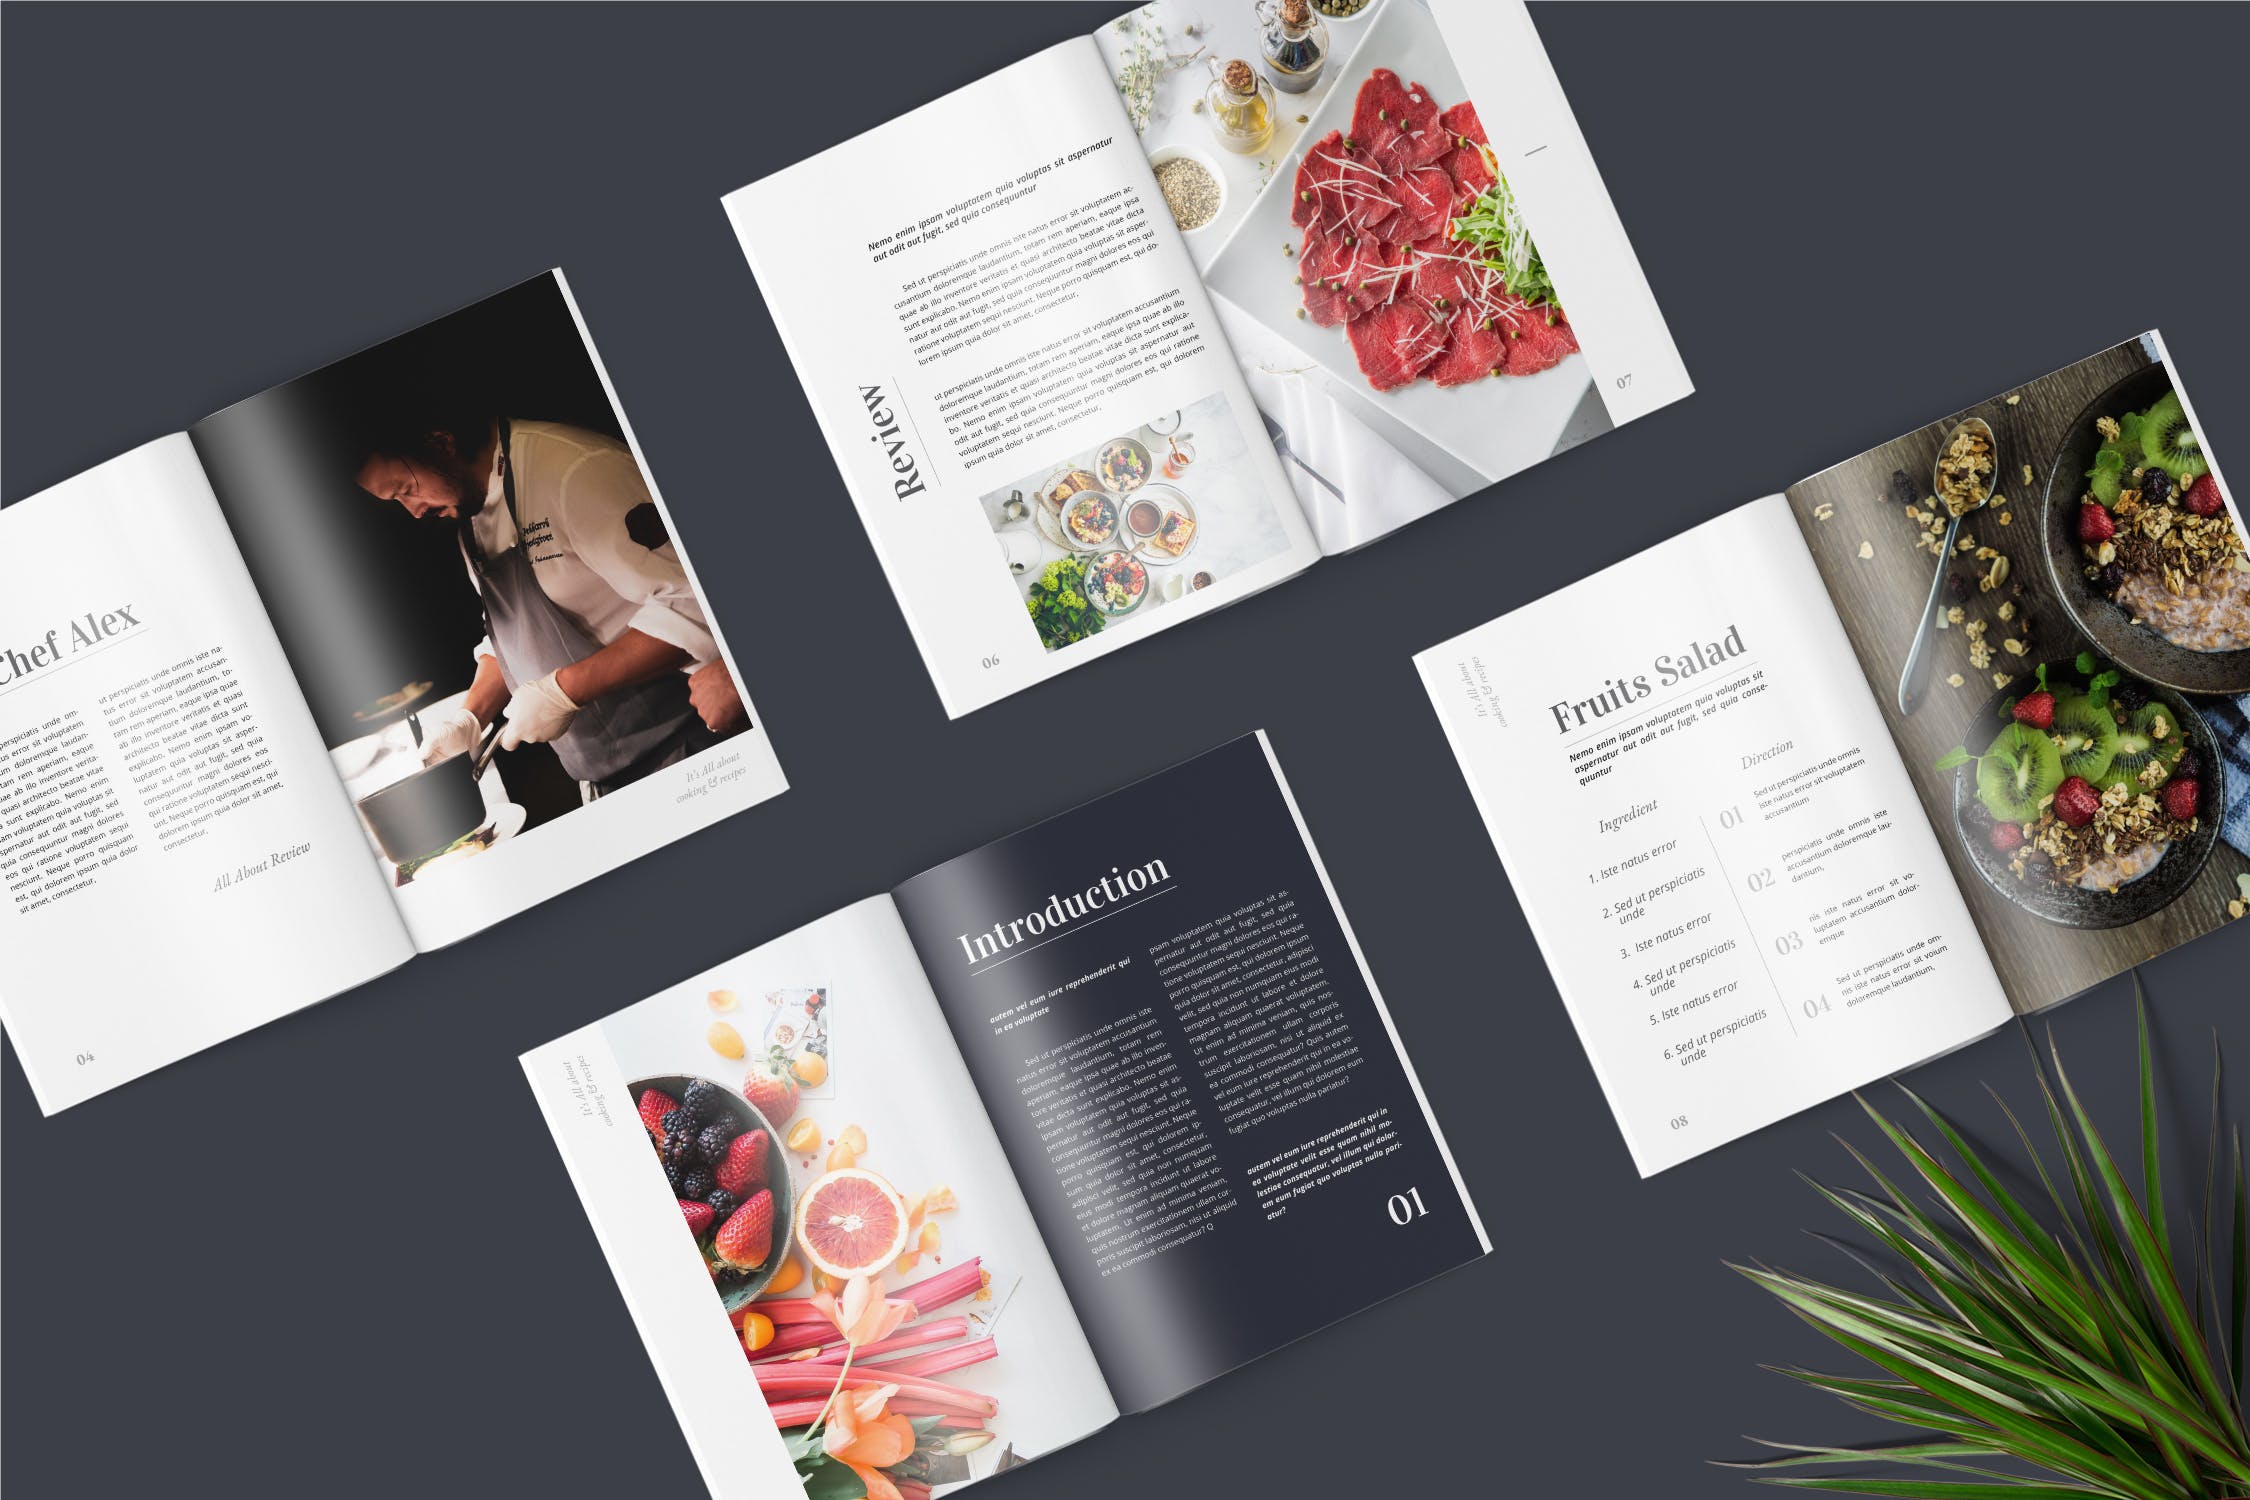 高端美食杂志排版设计模板 Food Magazine Template插图(1)